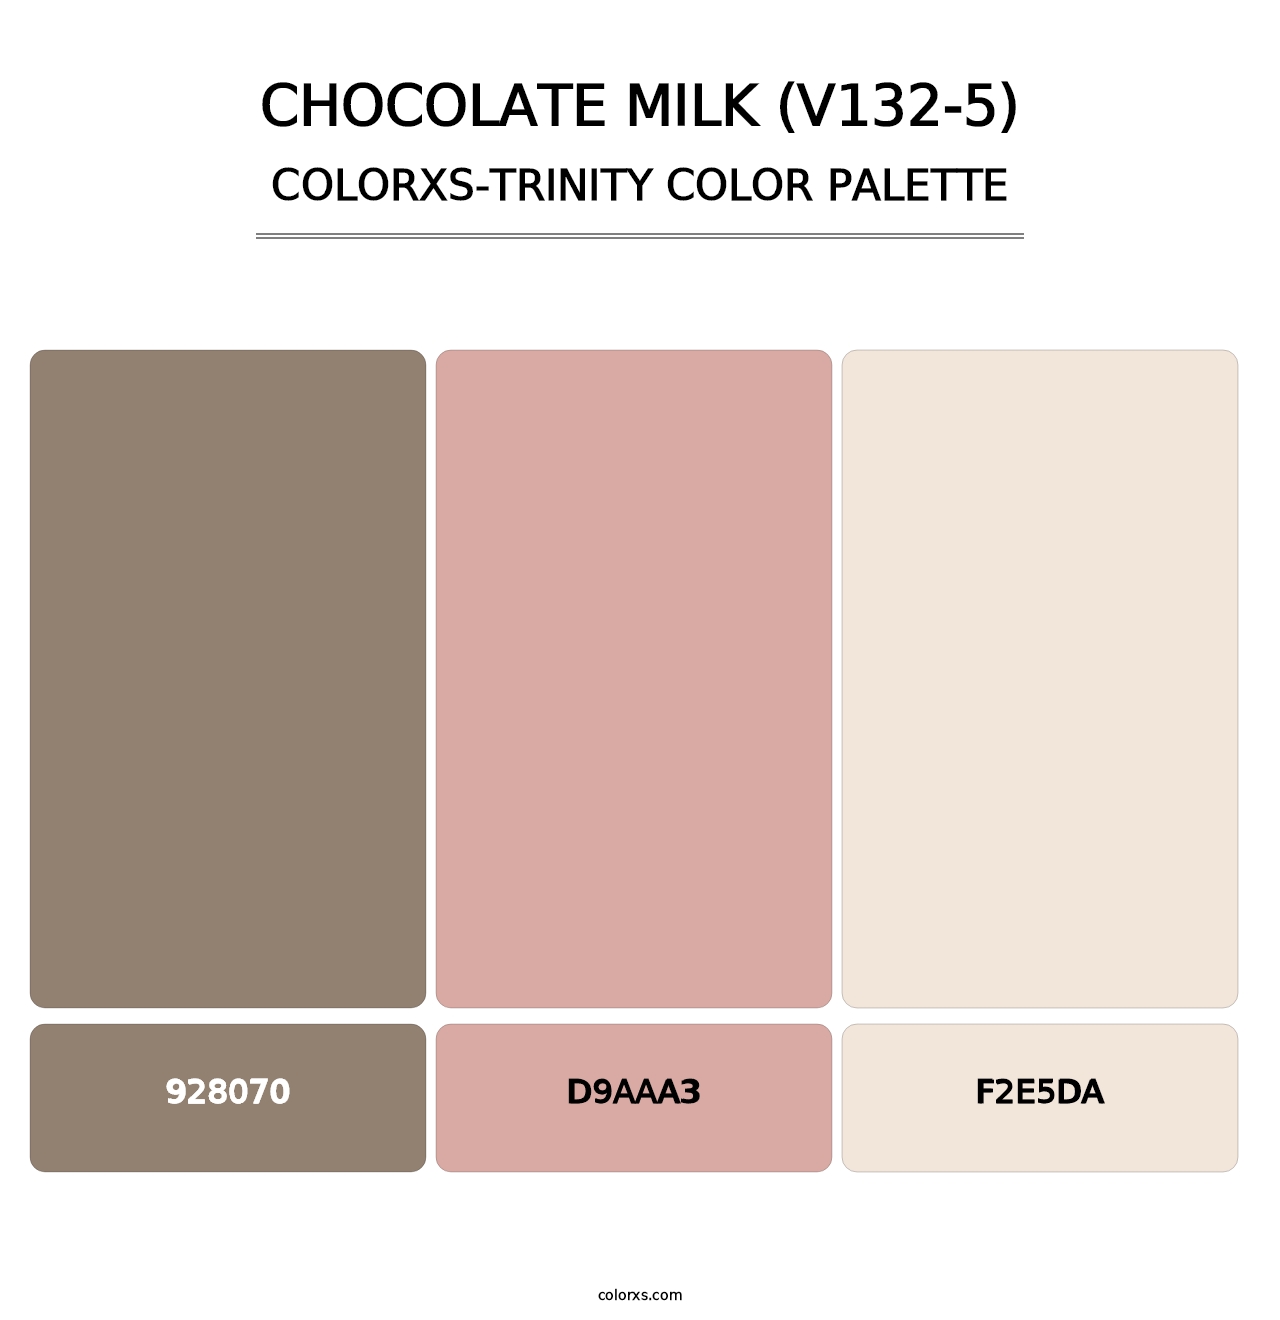 Chocolate Milk (V132-5) - Colorxs Trinity Palette